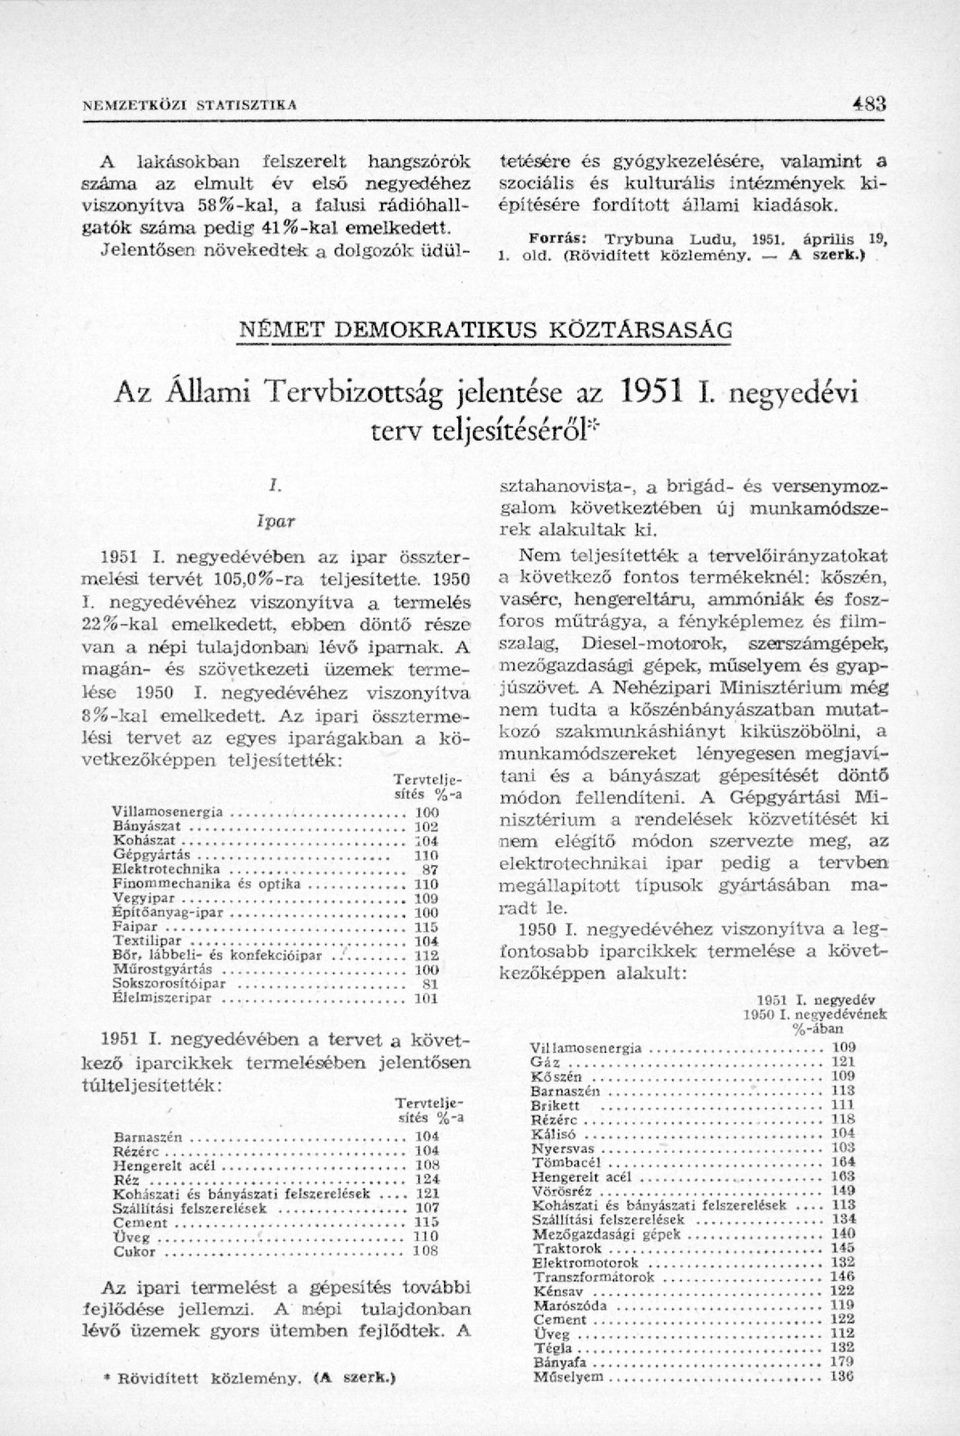 (Rövidített közlemény. A szerk.) NÉMET DEMOKRATIKUS KÖZTÁRSASÁG Az Állami Tervbizottság jelentése az 1951 I. negyedévi terv teljesítéséről"" i. Ipar 1951 I.